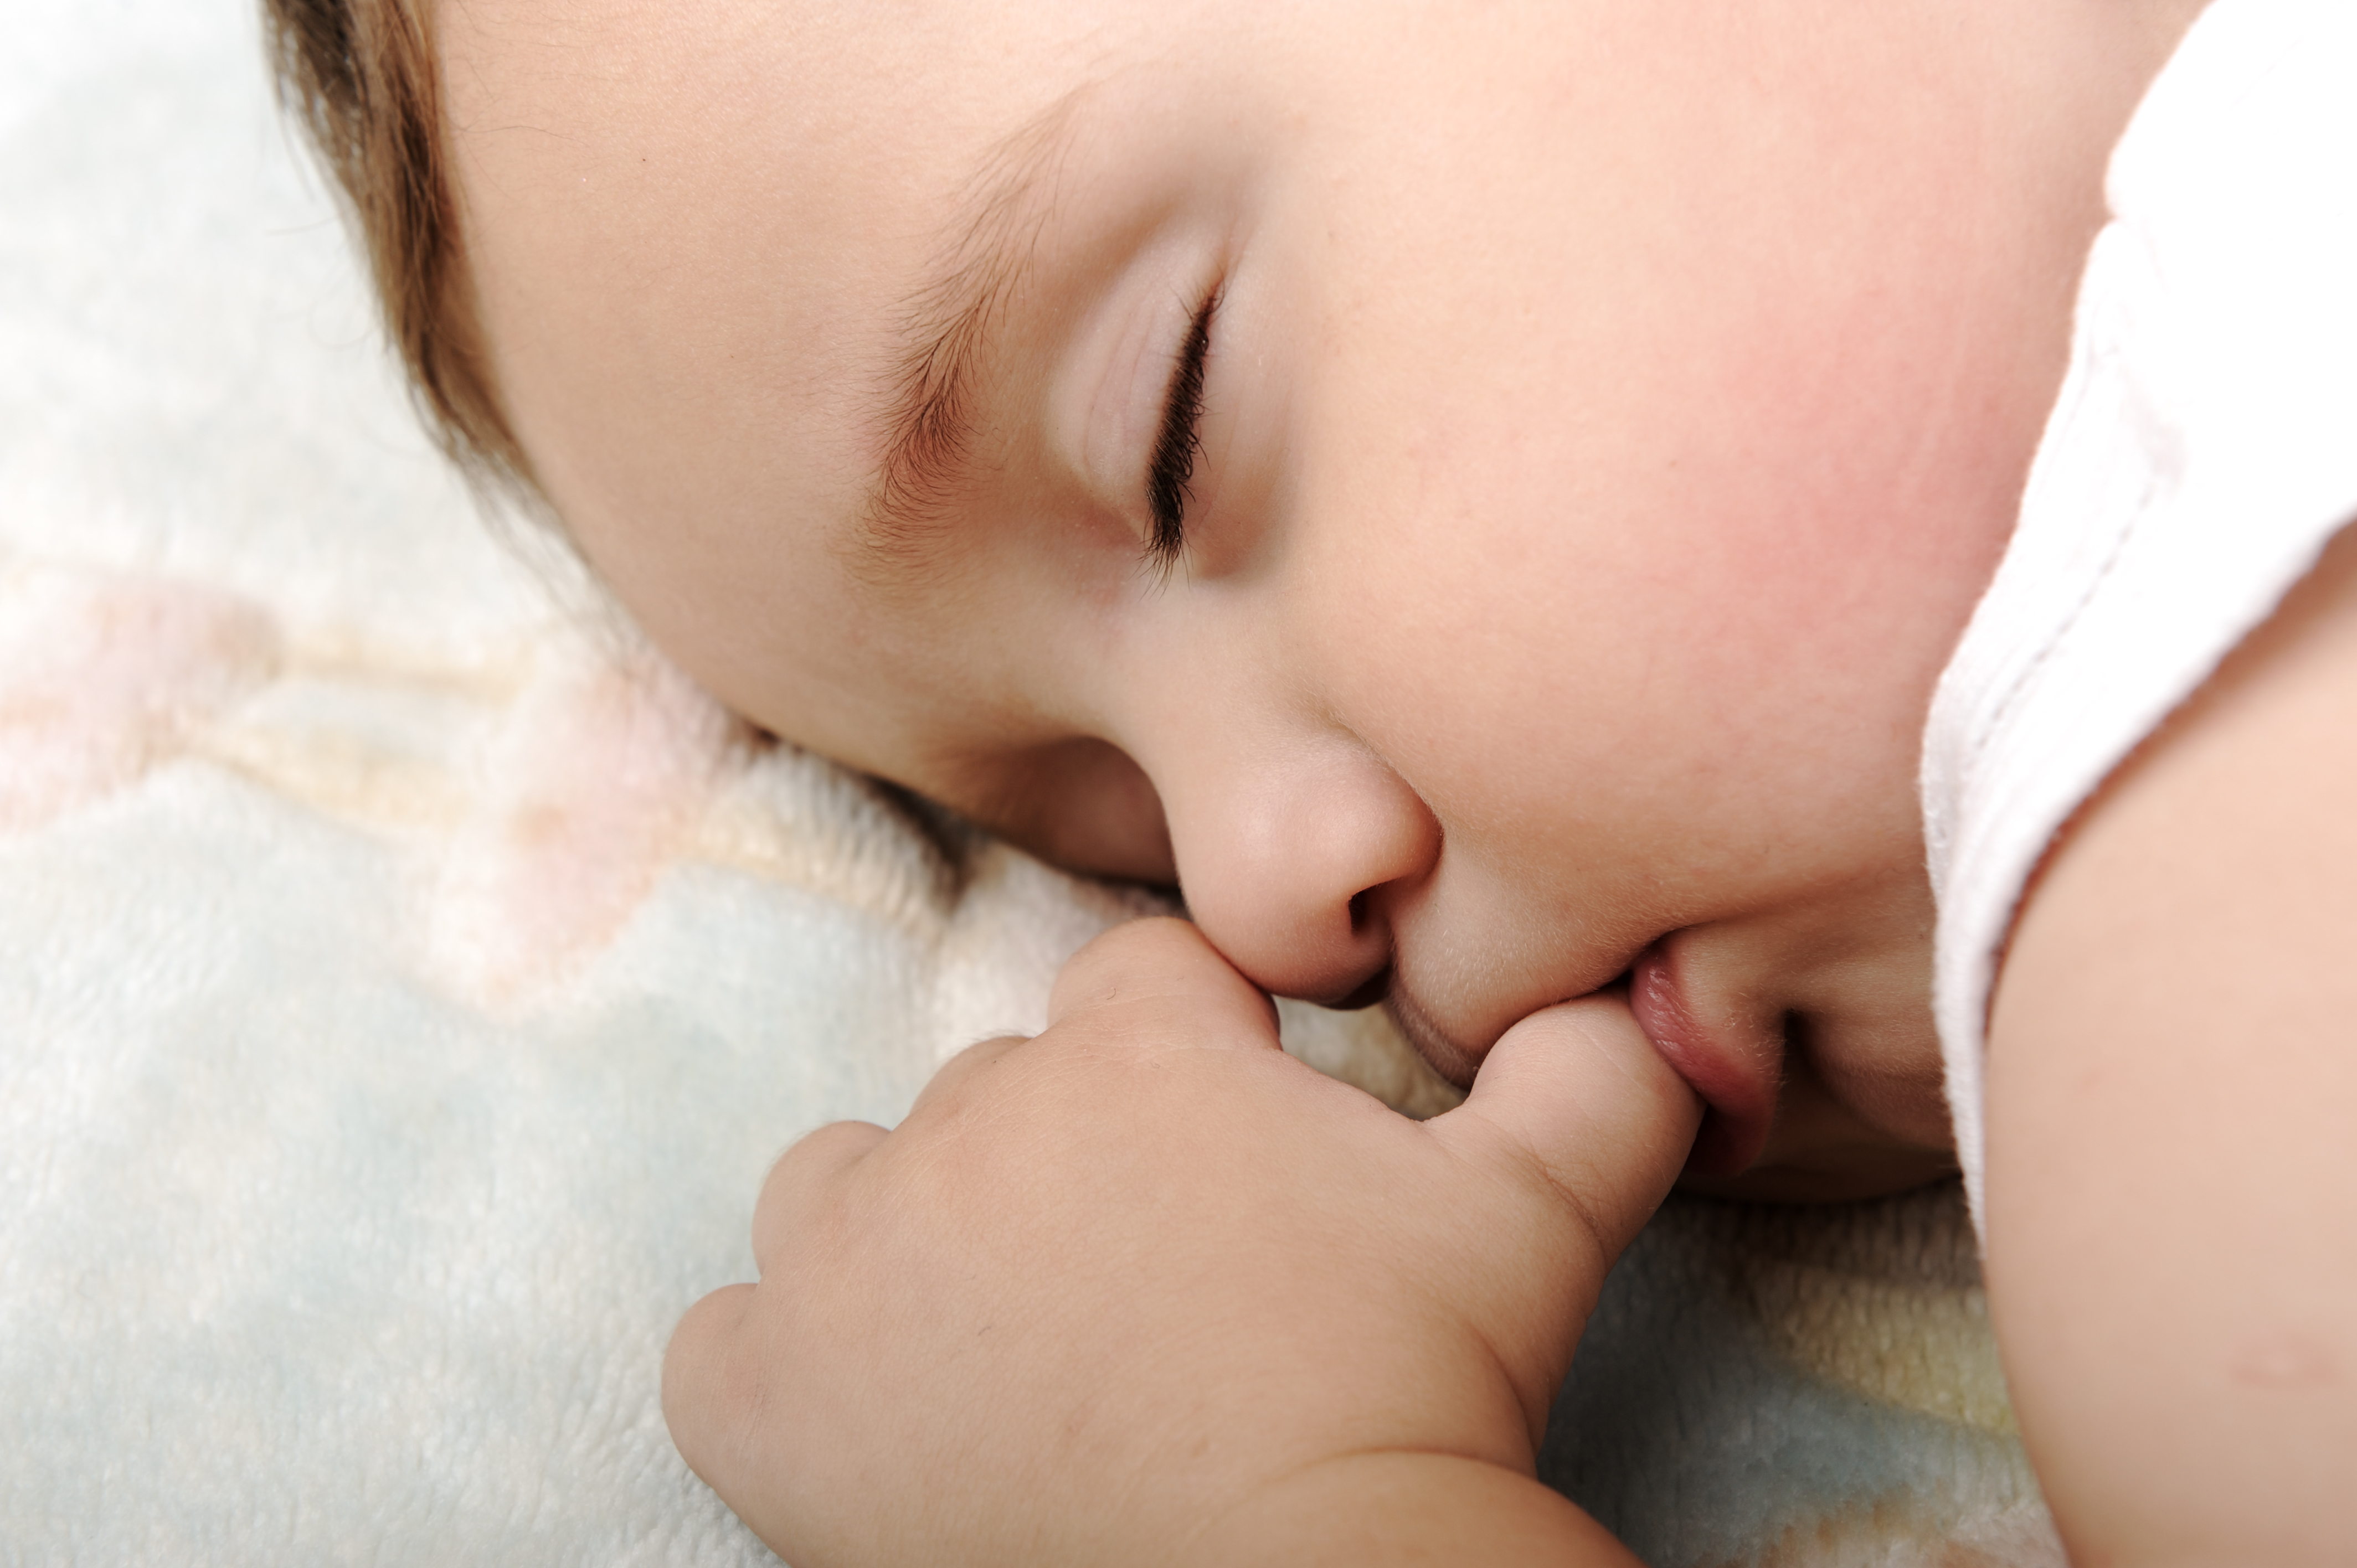 Сосание растительного. Спящий младенец. Сосательный рефлекс у младенца. Младенец с пальцем во рту. Сосание новорожденного.